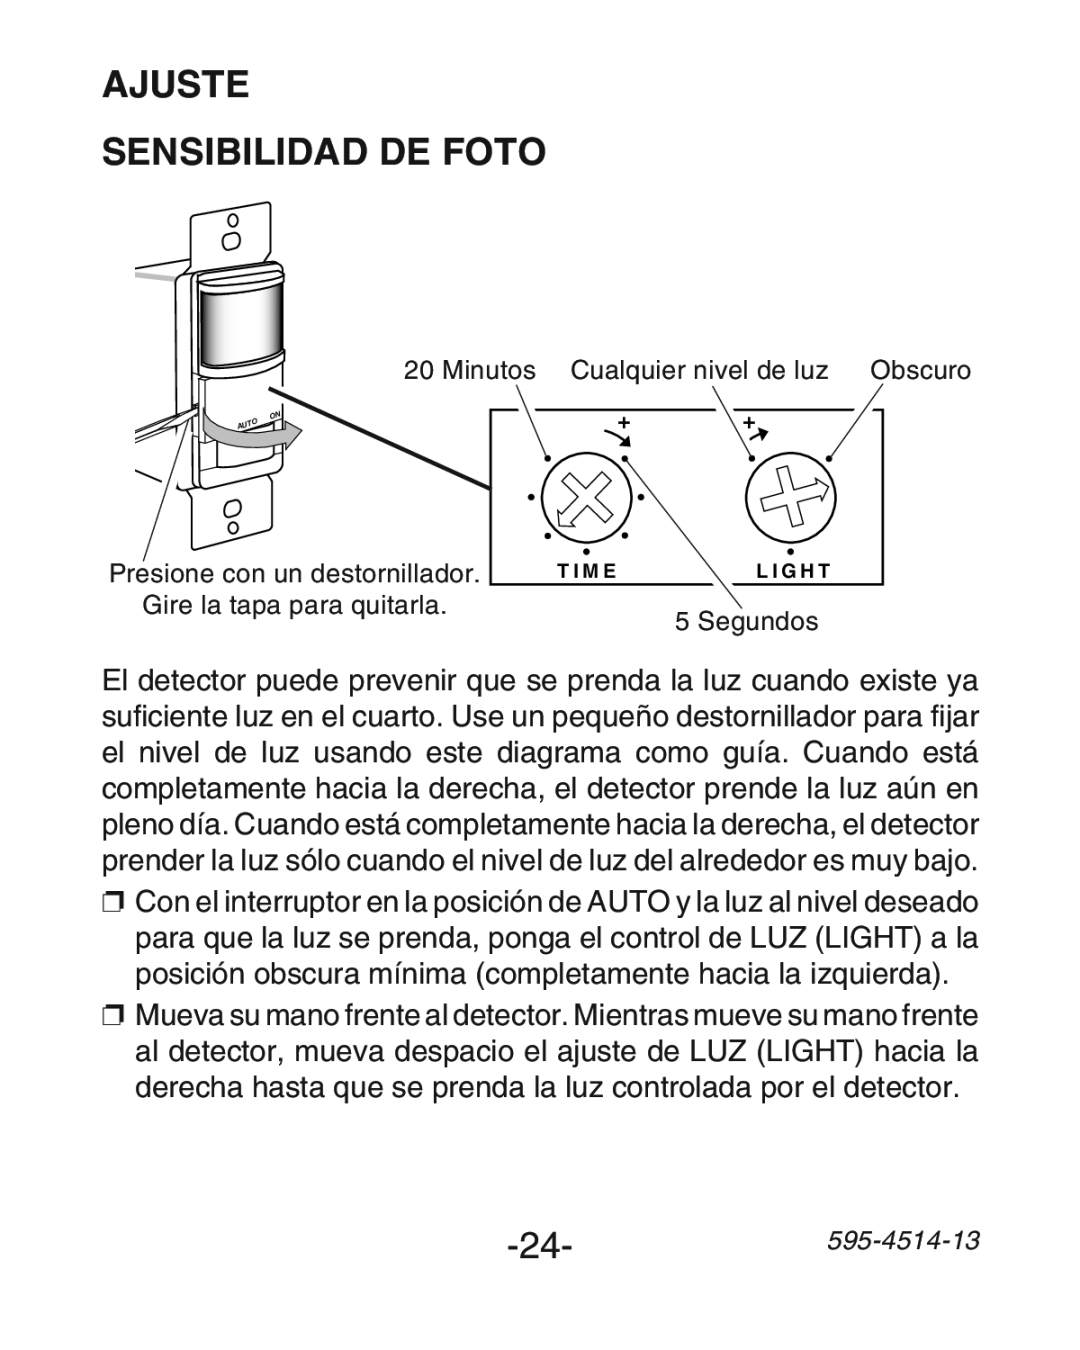 Heath Zenith SL-6107 manual Ajuste Sensibilidad De Foto, 24-595-4514-13 